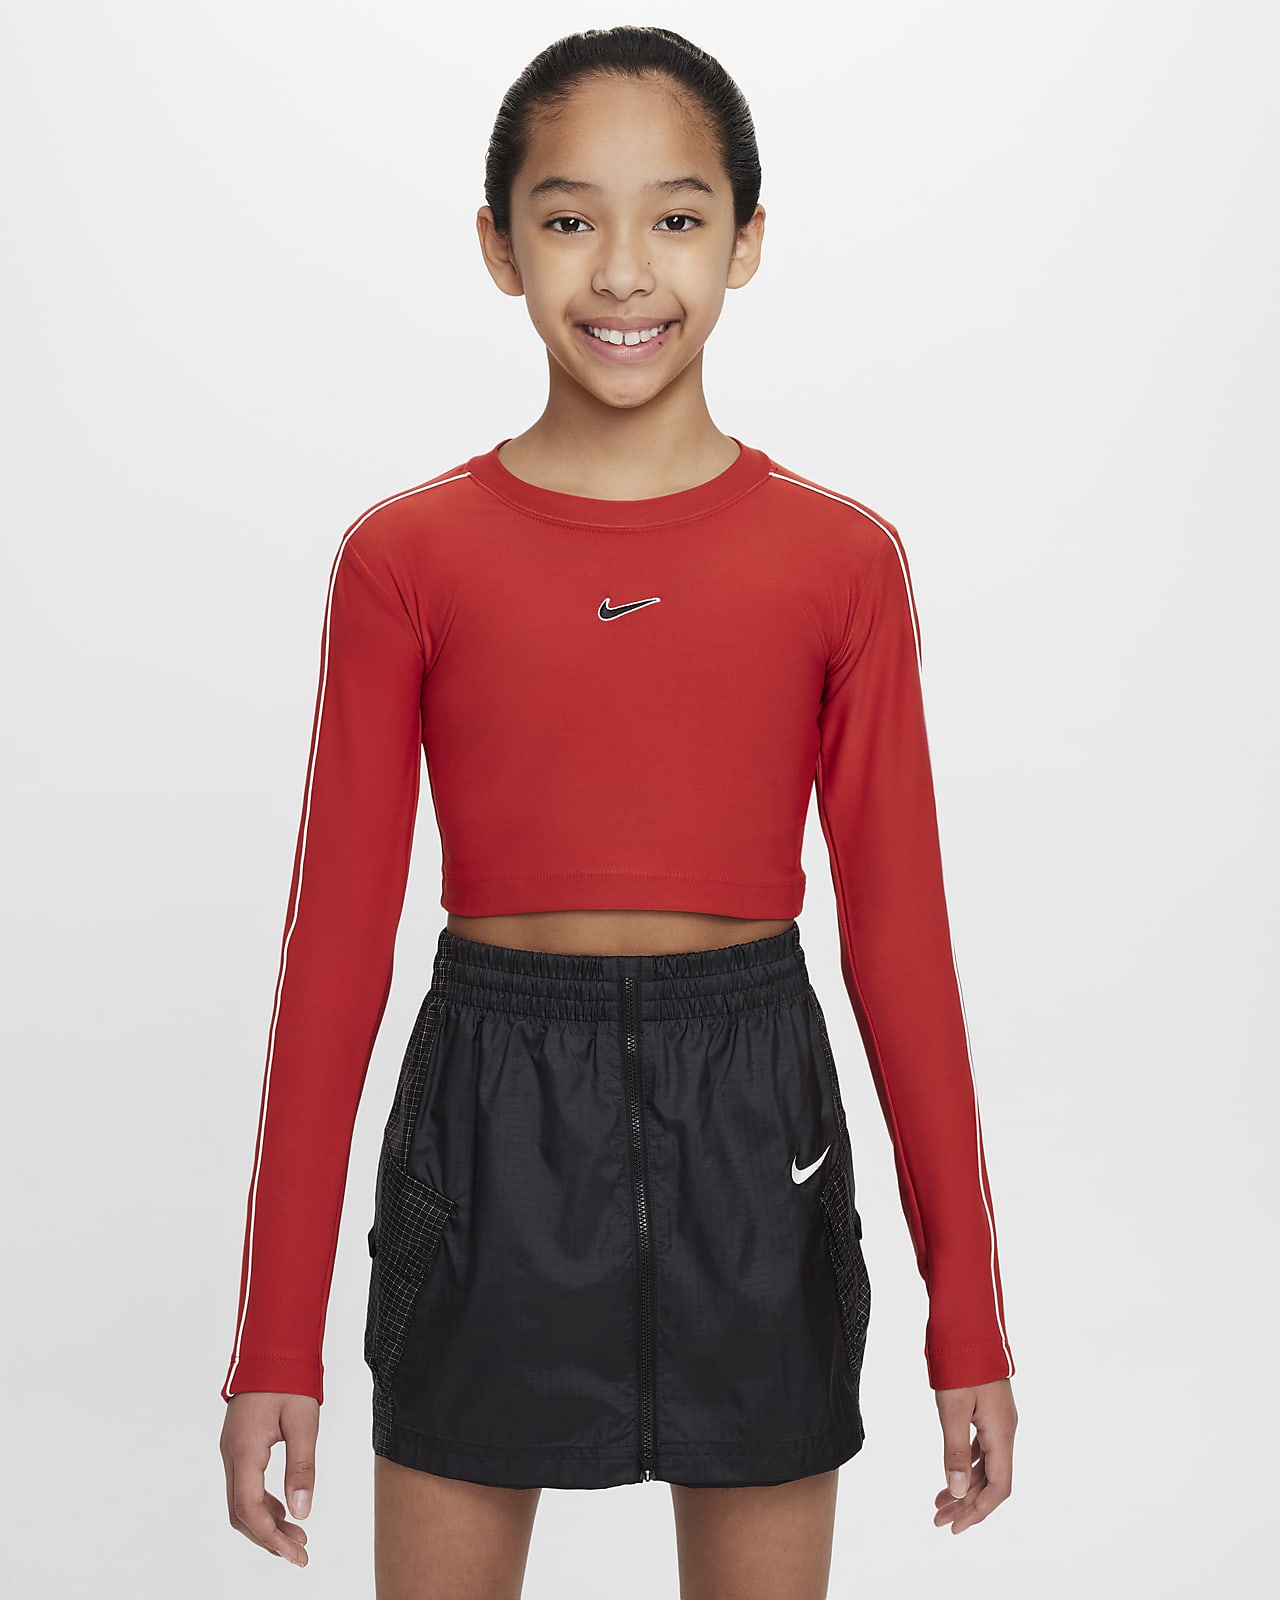 Zkrácené tričko s dlouhým rukávem Nike Sportswear pro větší děti (dívky)